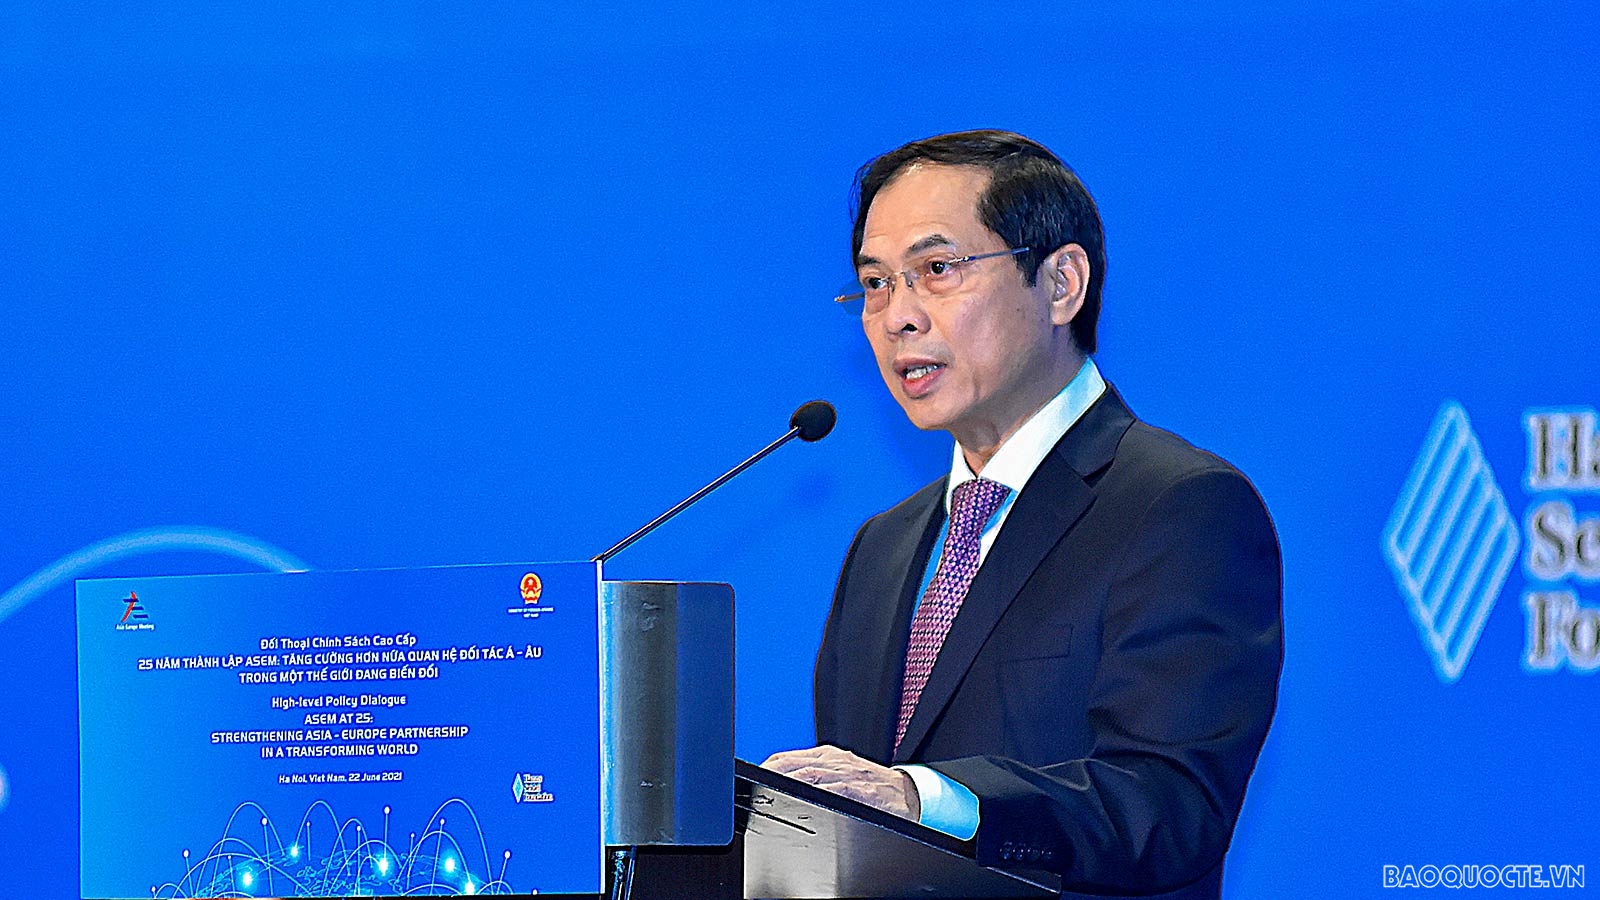 Kỷ niệm 25 năm thành lập ASEM: Bộ trưởng Ngoại giao Bùi Thanh Sơn đề xuất ba mục tiêu lớn mà ASEM cần hướng tới